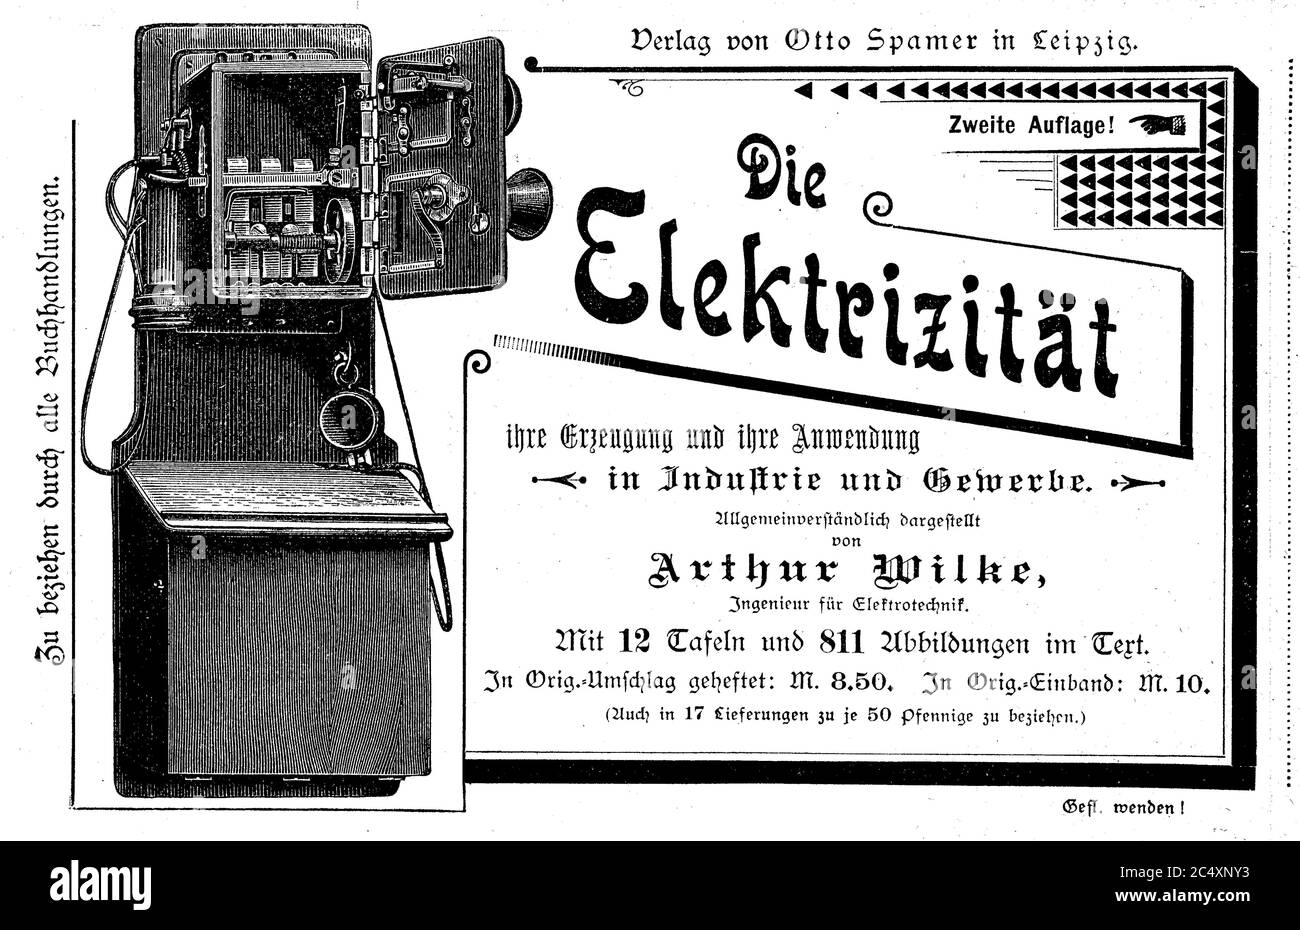 Publicidad, publicidad de publicación Spamer para el libro Electricidad, CA 1890 / Werbung, Werbeanzeige des Verlag Spamer fuer das Buch Die Elektrizitaet, CA 1890 Foto de stock